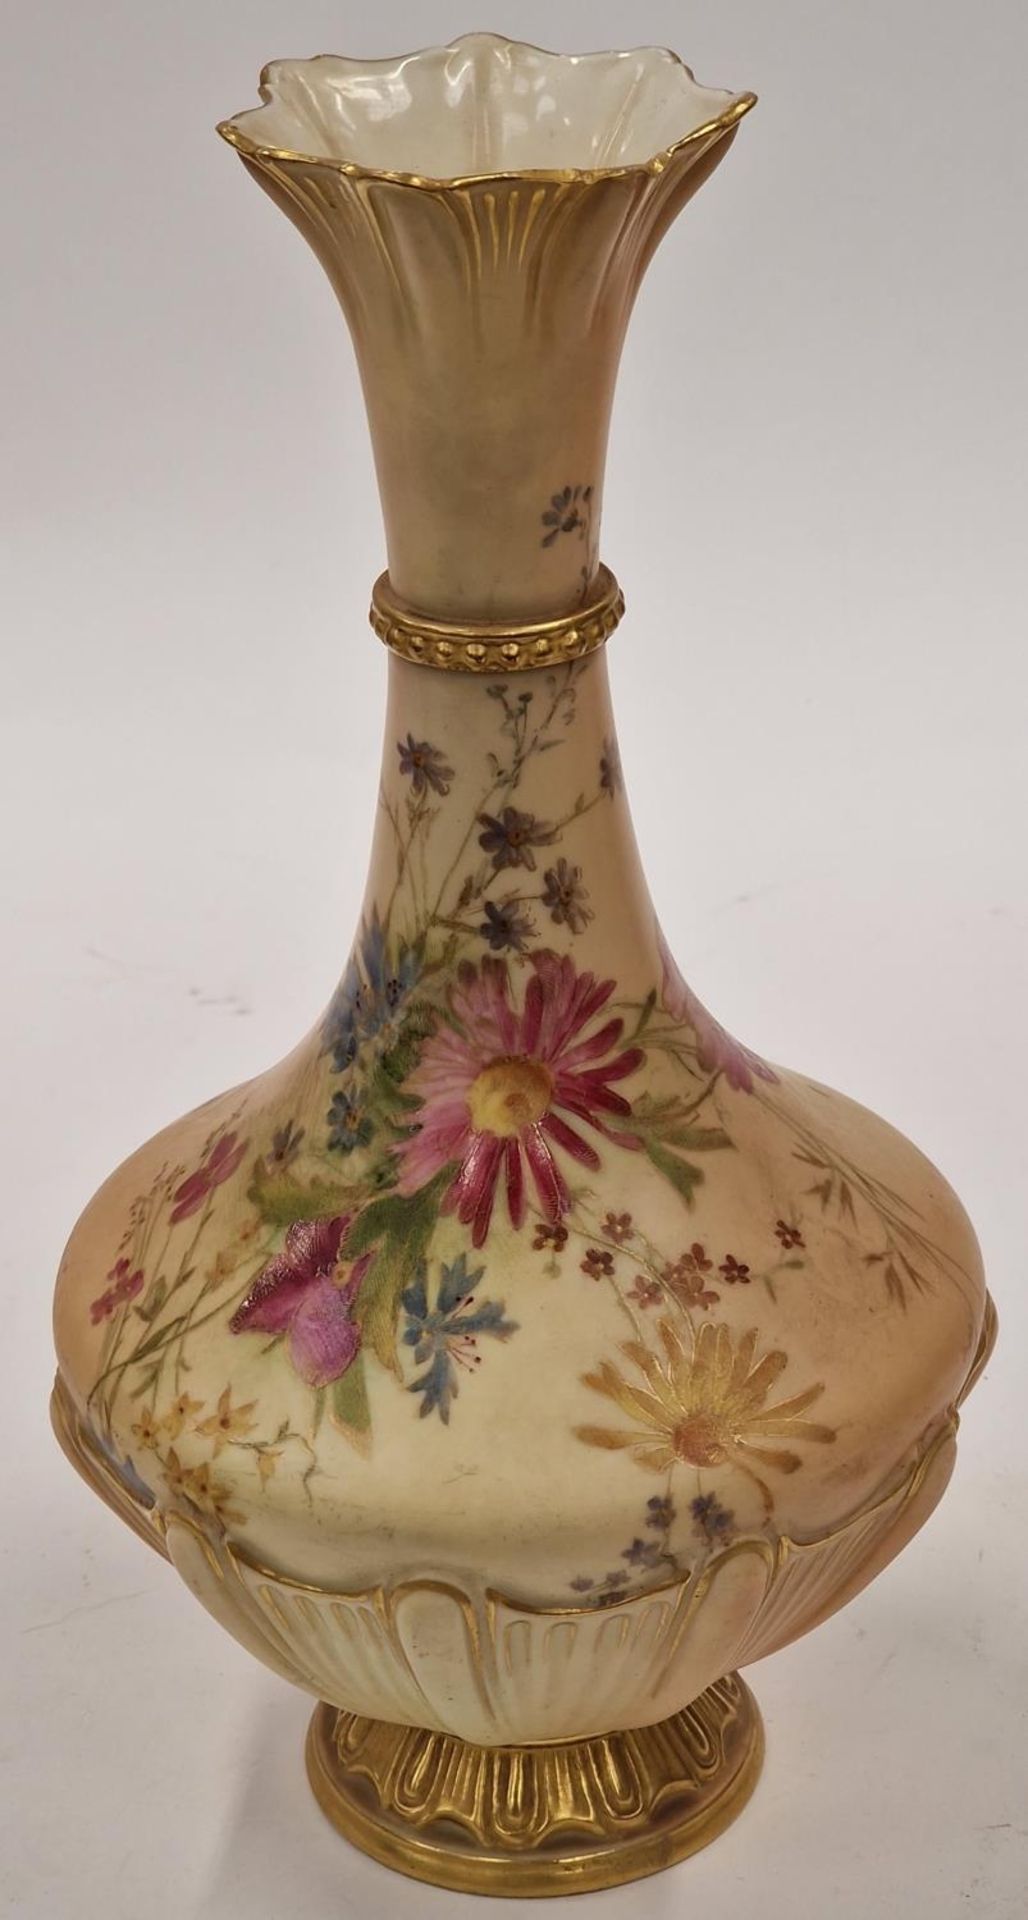 Edwardian Royal Worcester Blush pattern 1538 vase 28cm tall 15cm wide base 7.5cm - Image 2 of 4